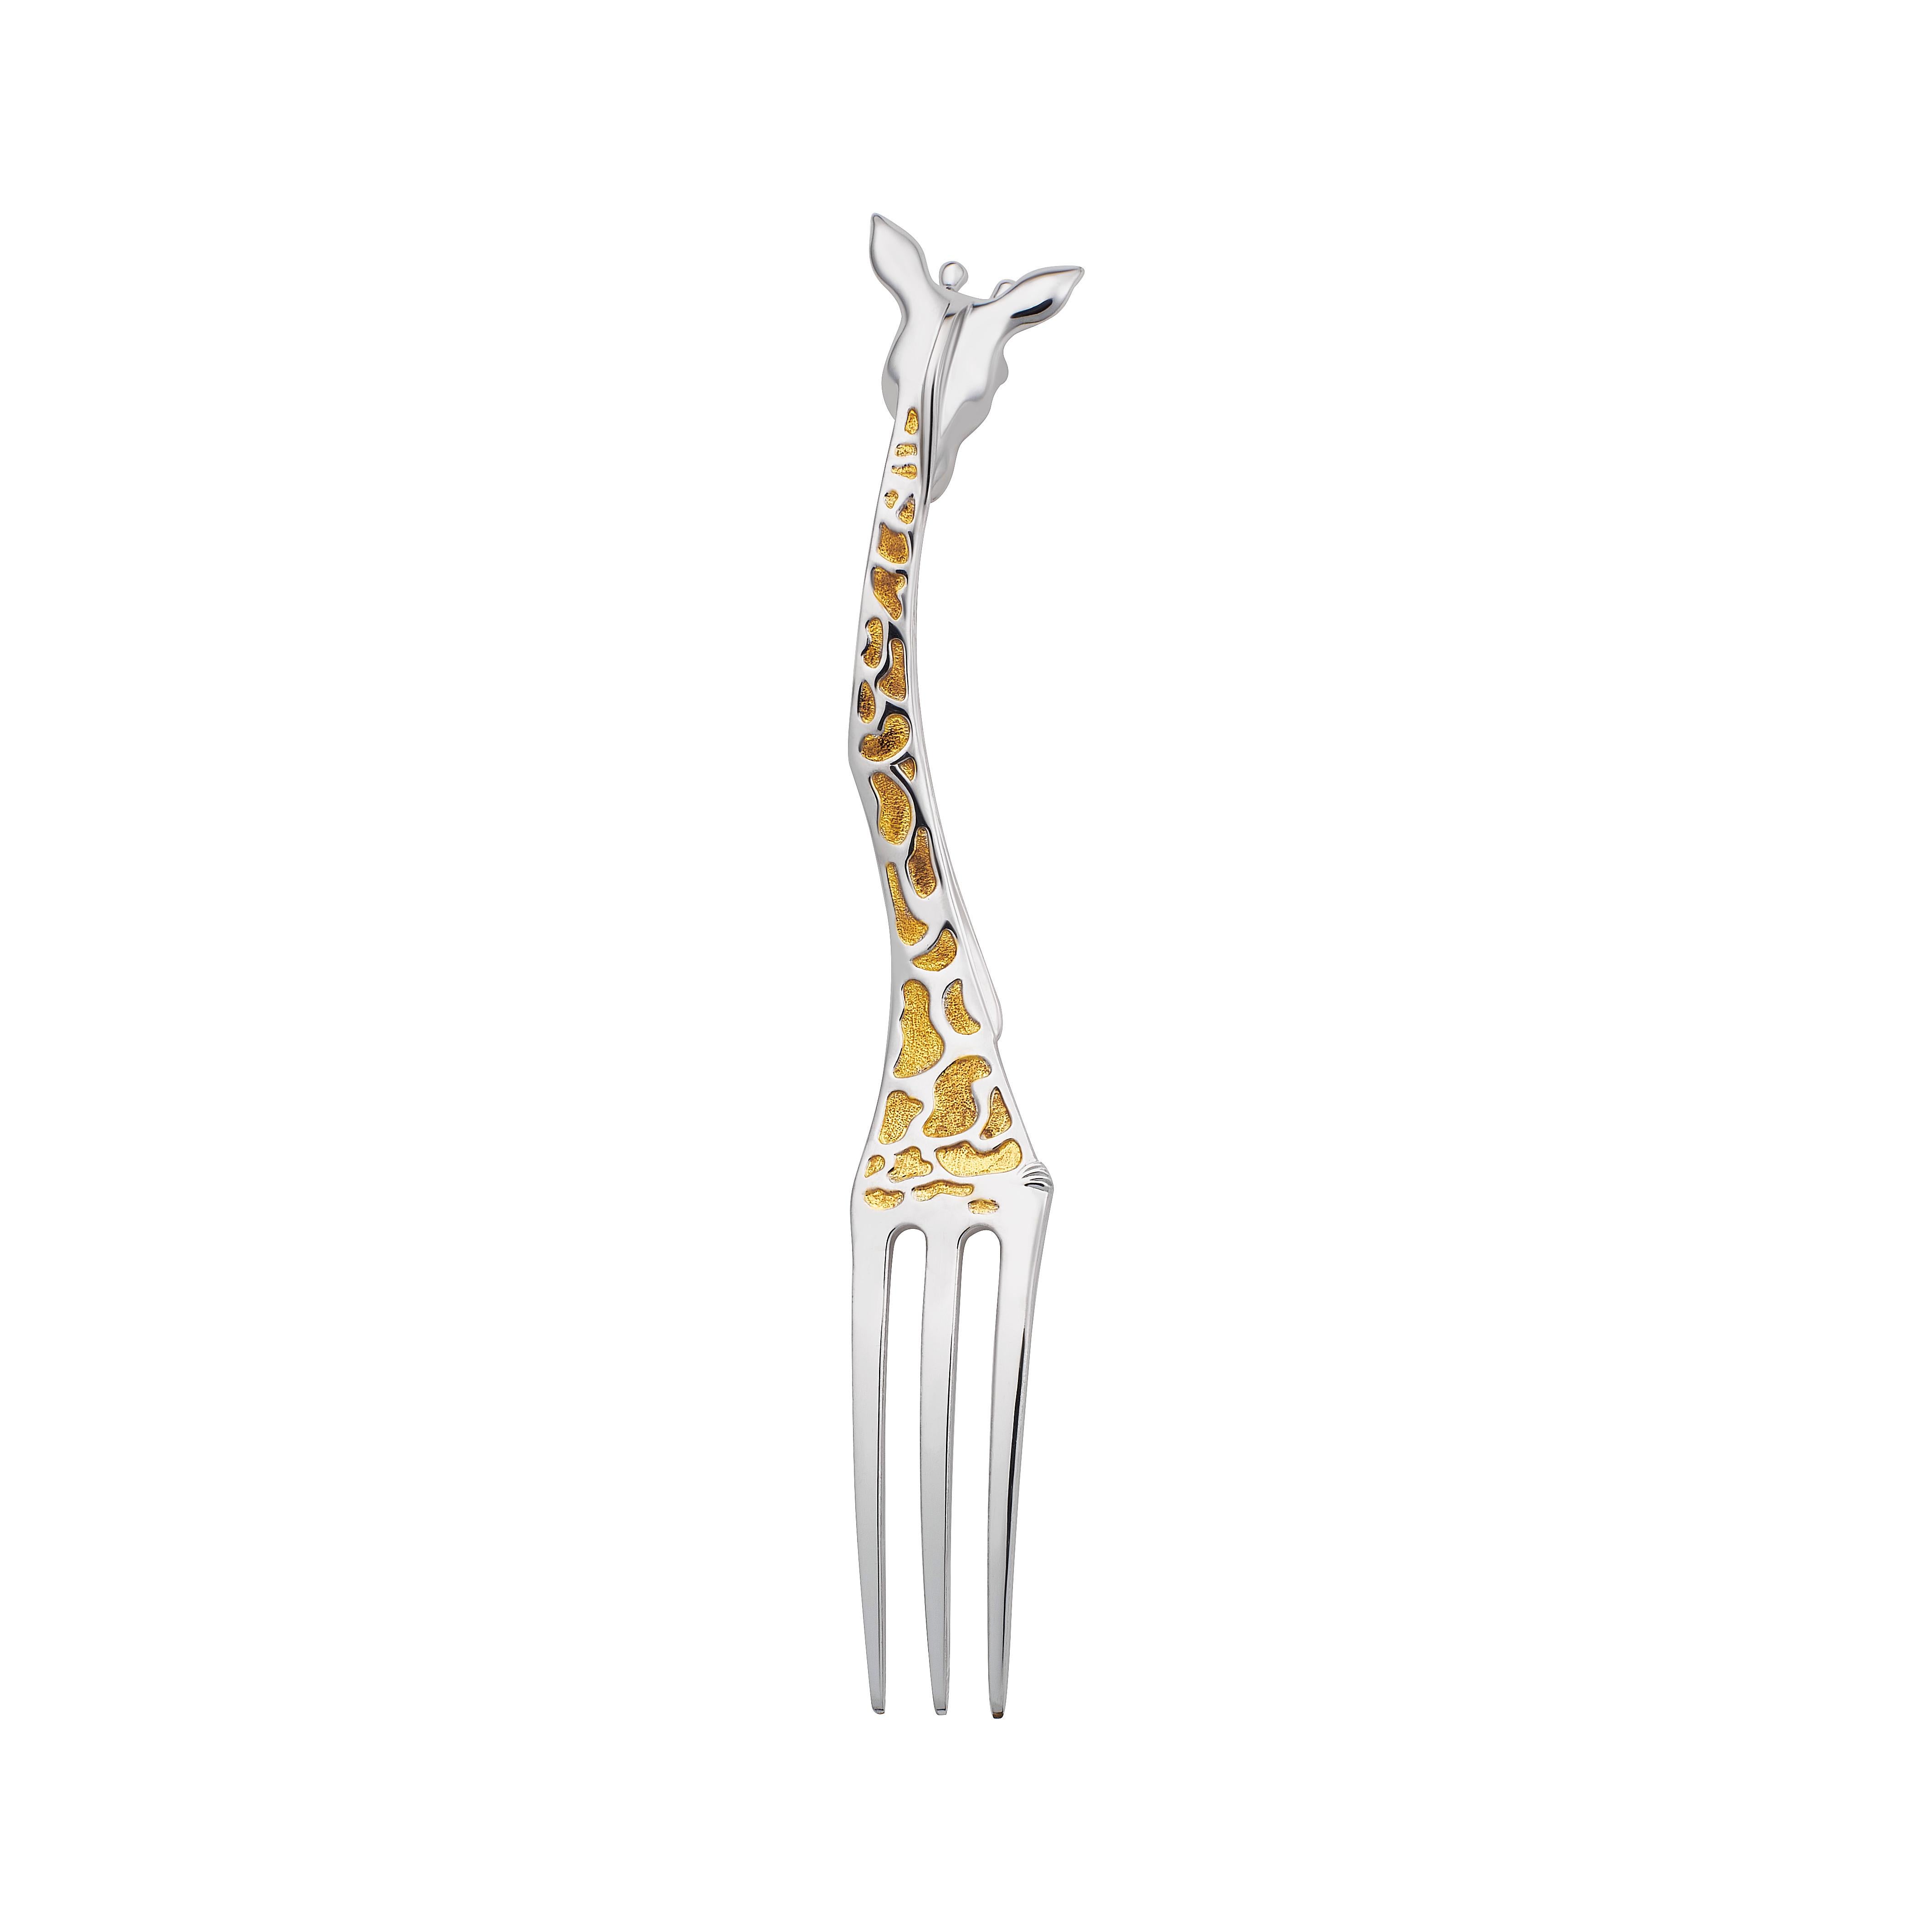 Eine bezaubernde, luxuriöse Giraffengabel von MOISEIKIN®  besteht aus  925er Sterlingsilber mit Indium, Rhodium und sorgfältiger Vergoldung. Die Zugabe von Indium bewahrt das glänzende Aussehen und die Haltbarkeit und  eine dünne Schicht eines